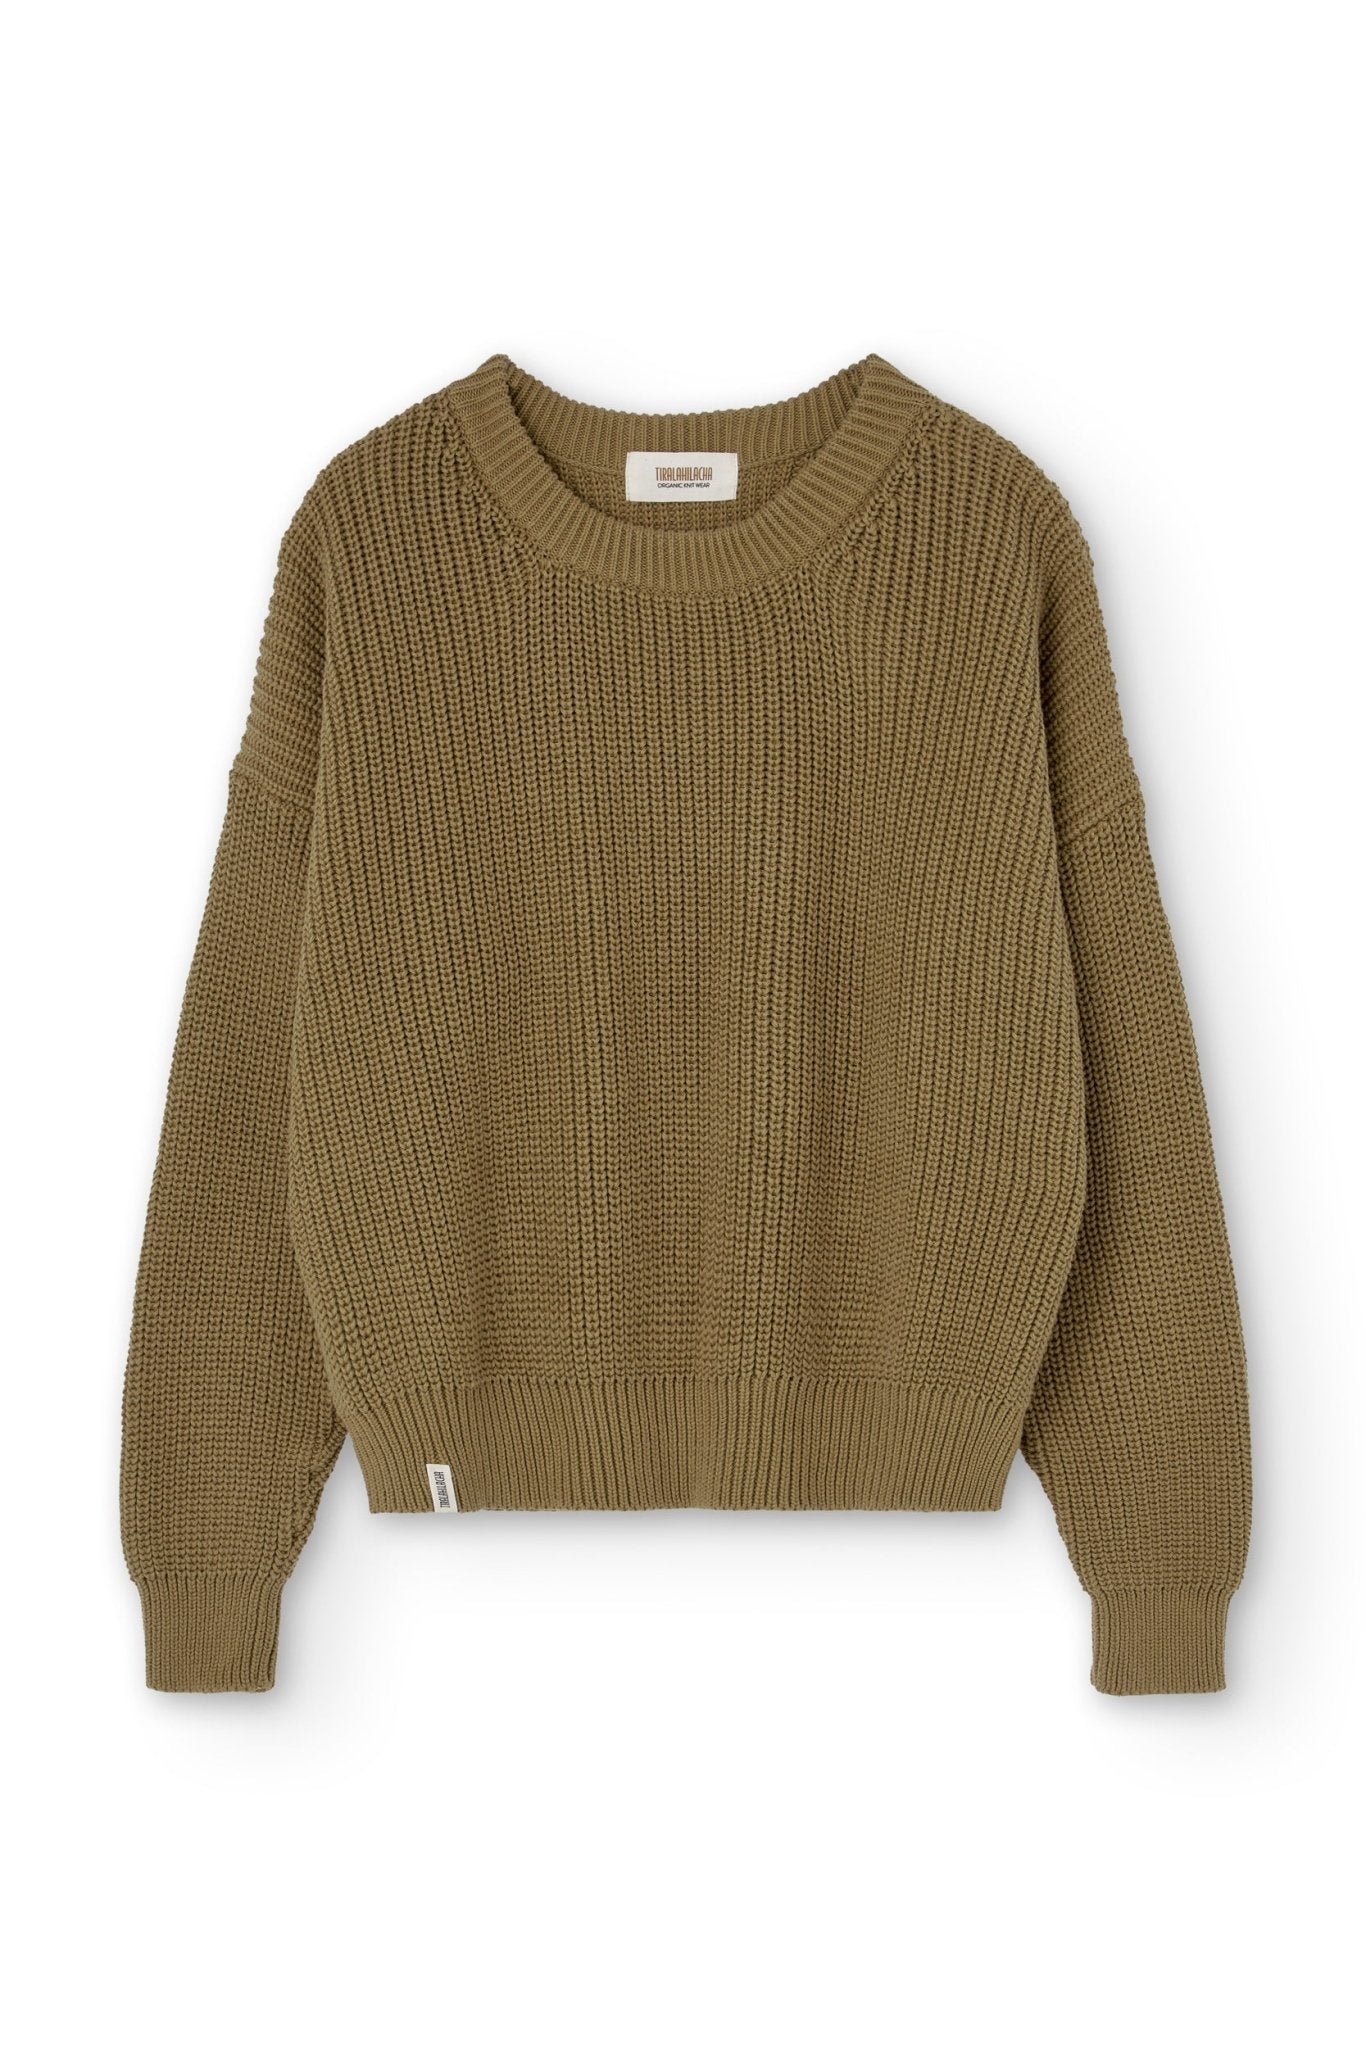 Gyra sweater green Earth brown organic cotton - TIRALAHILACHA